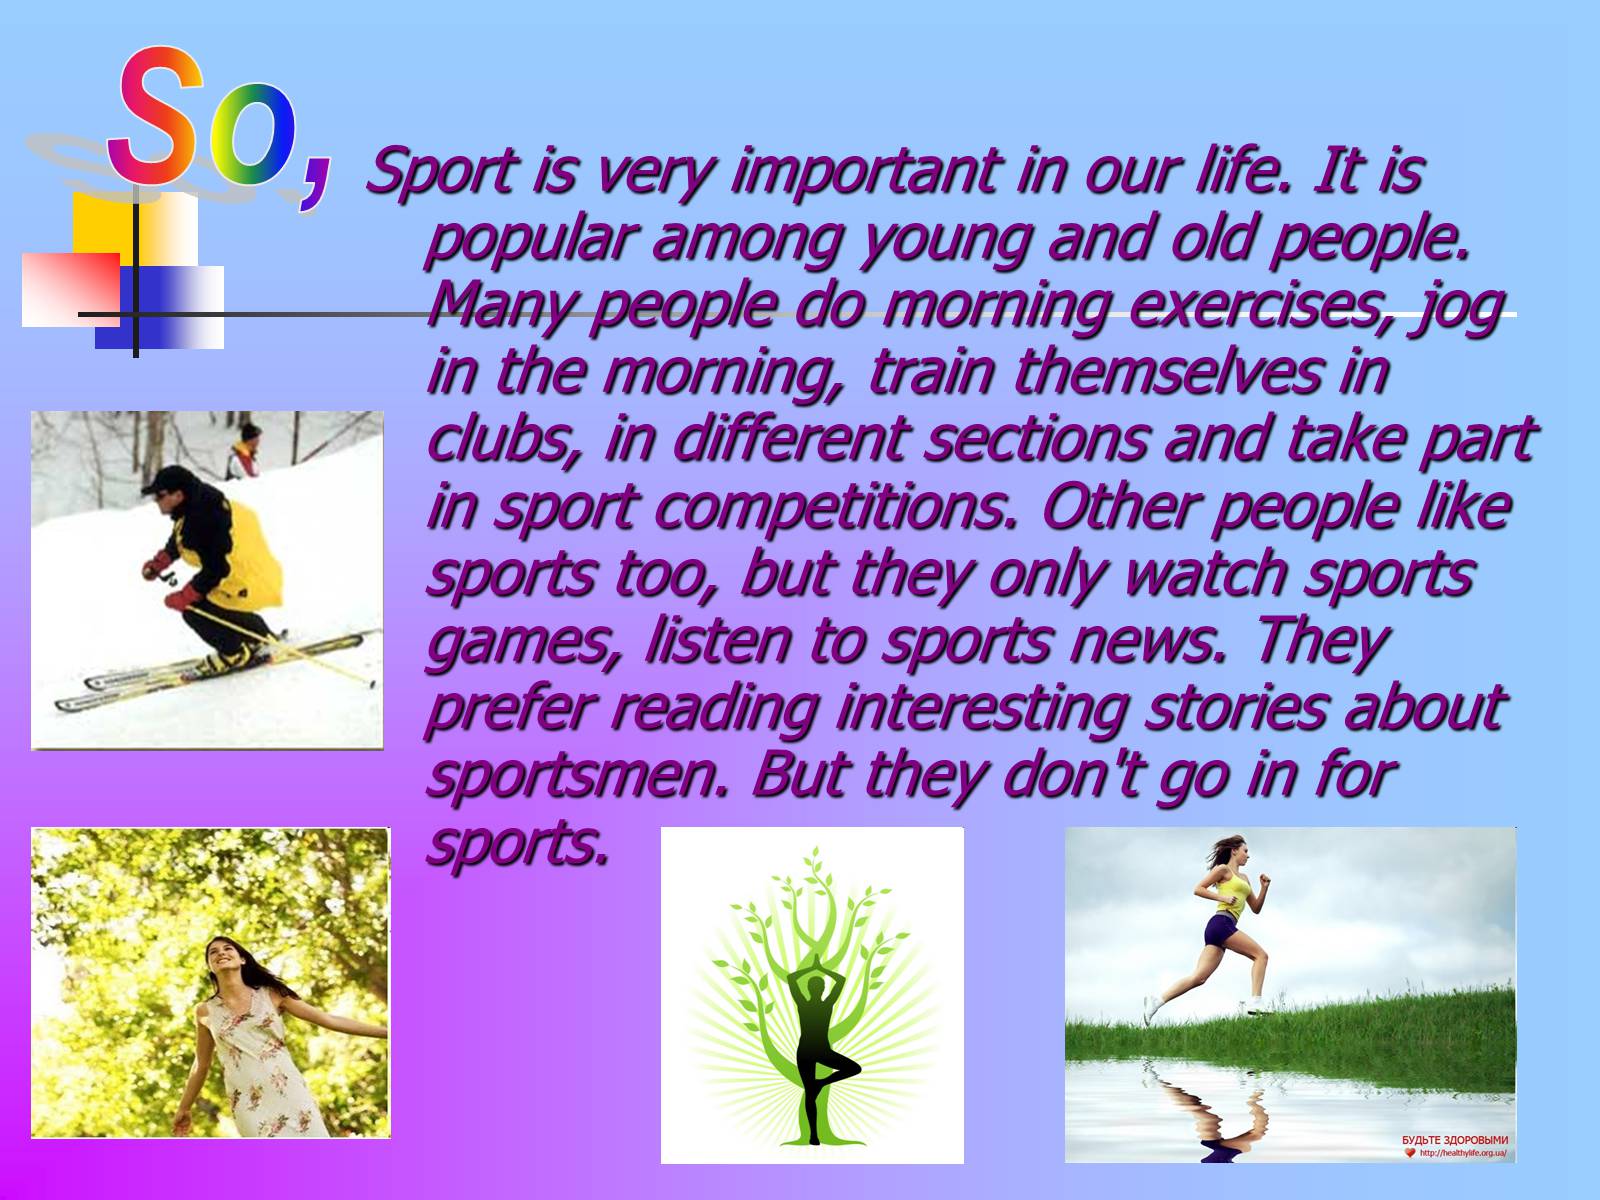 My life sports. Презентация на тему спорт. Sport in our Life презентация. Проект по английскому на тему спорт. Проект по английскому языку здоровый образ жизни.